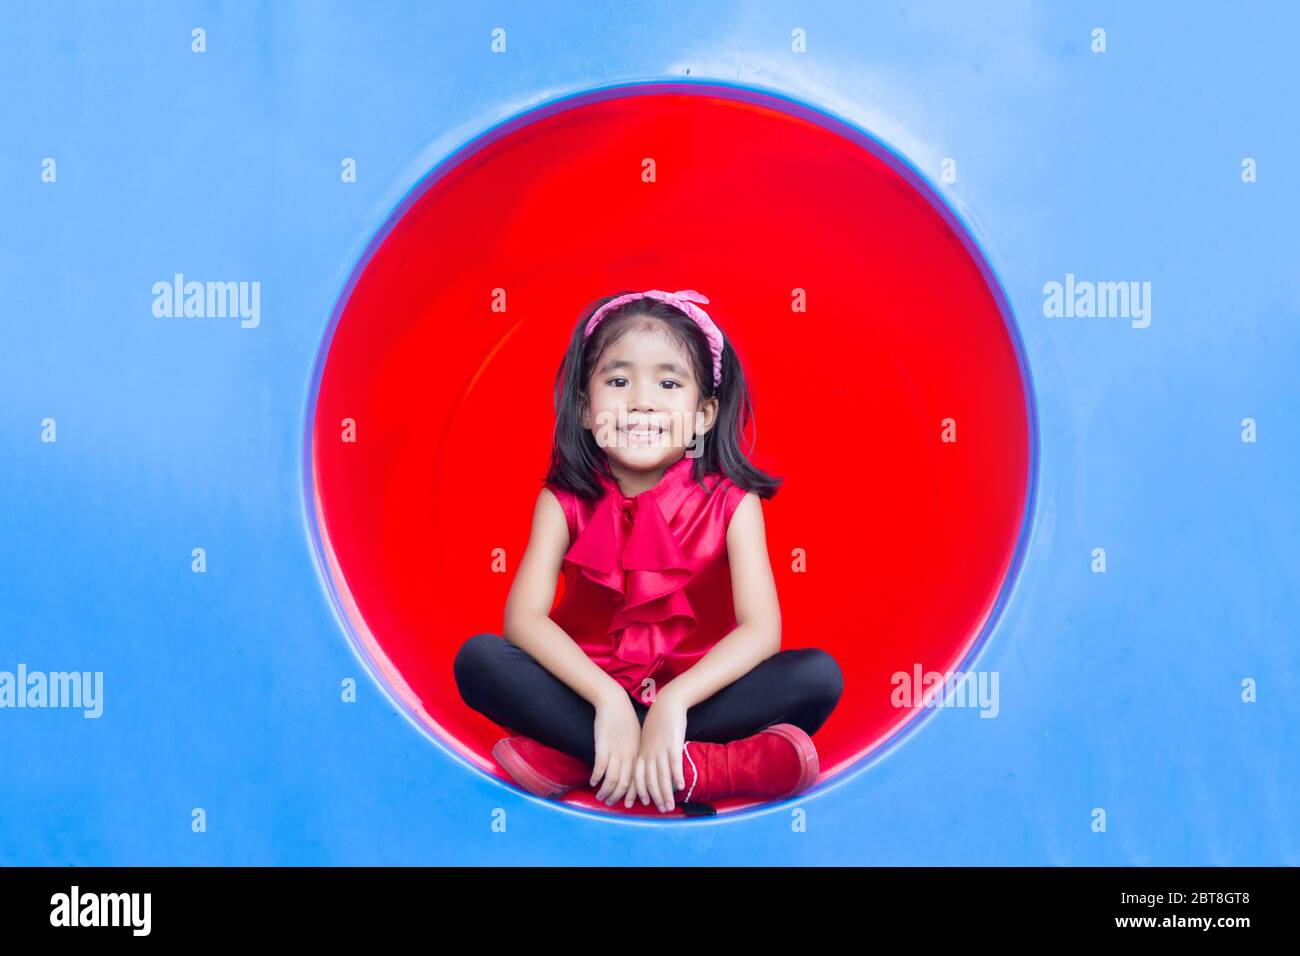 souriez les enfants asiatiques sur le cercle de parc de jeux en plastique Banque D'Images